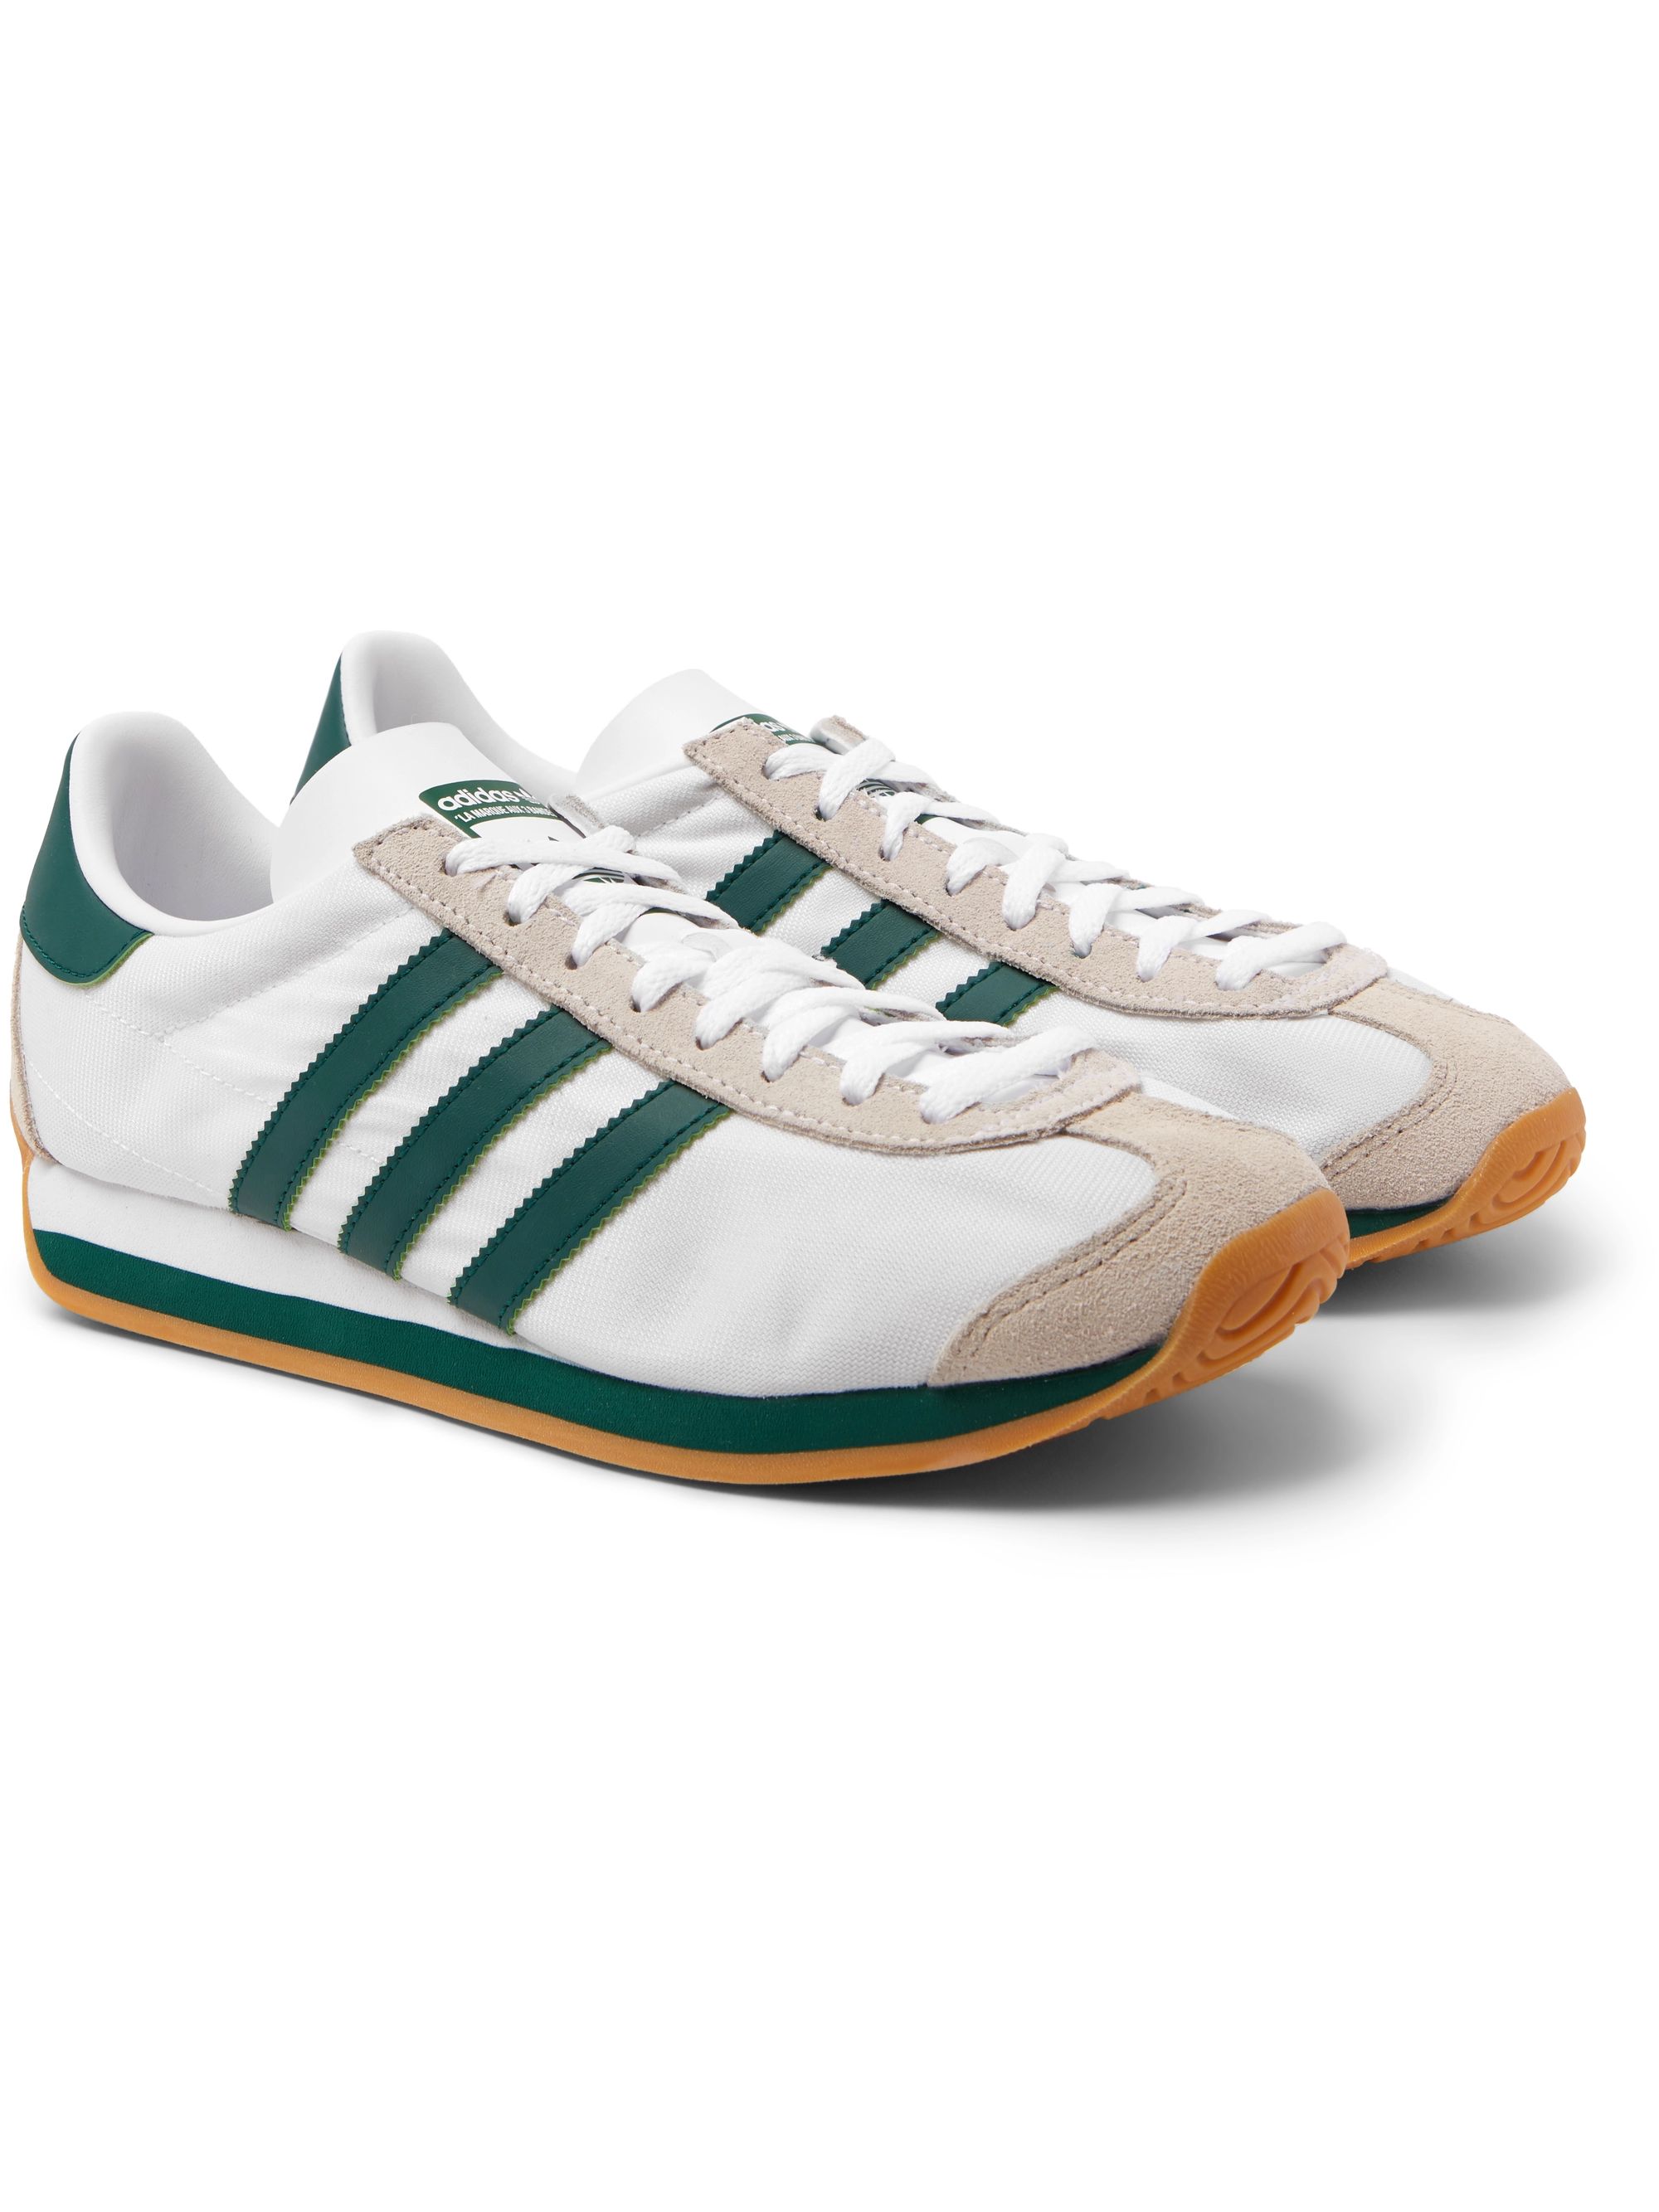 adidas originals tennis shoes